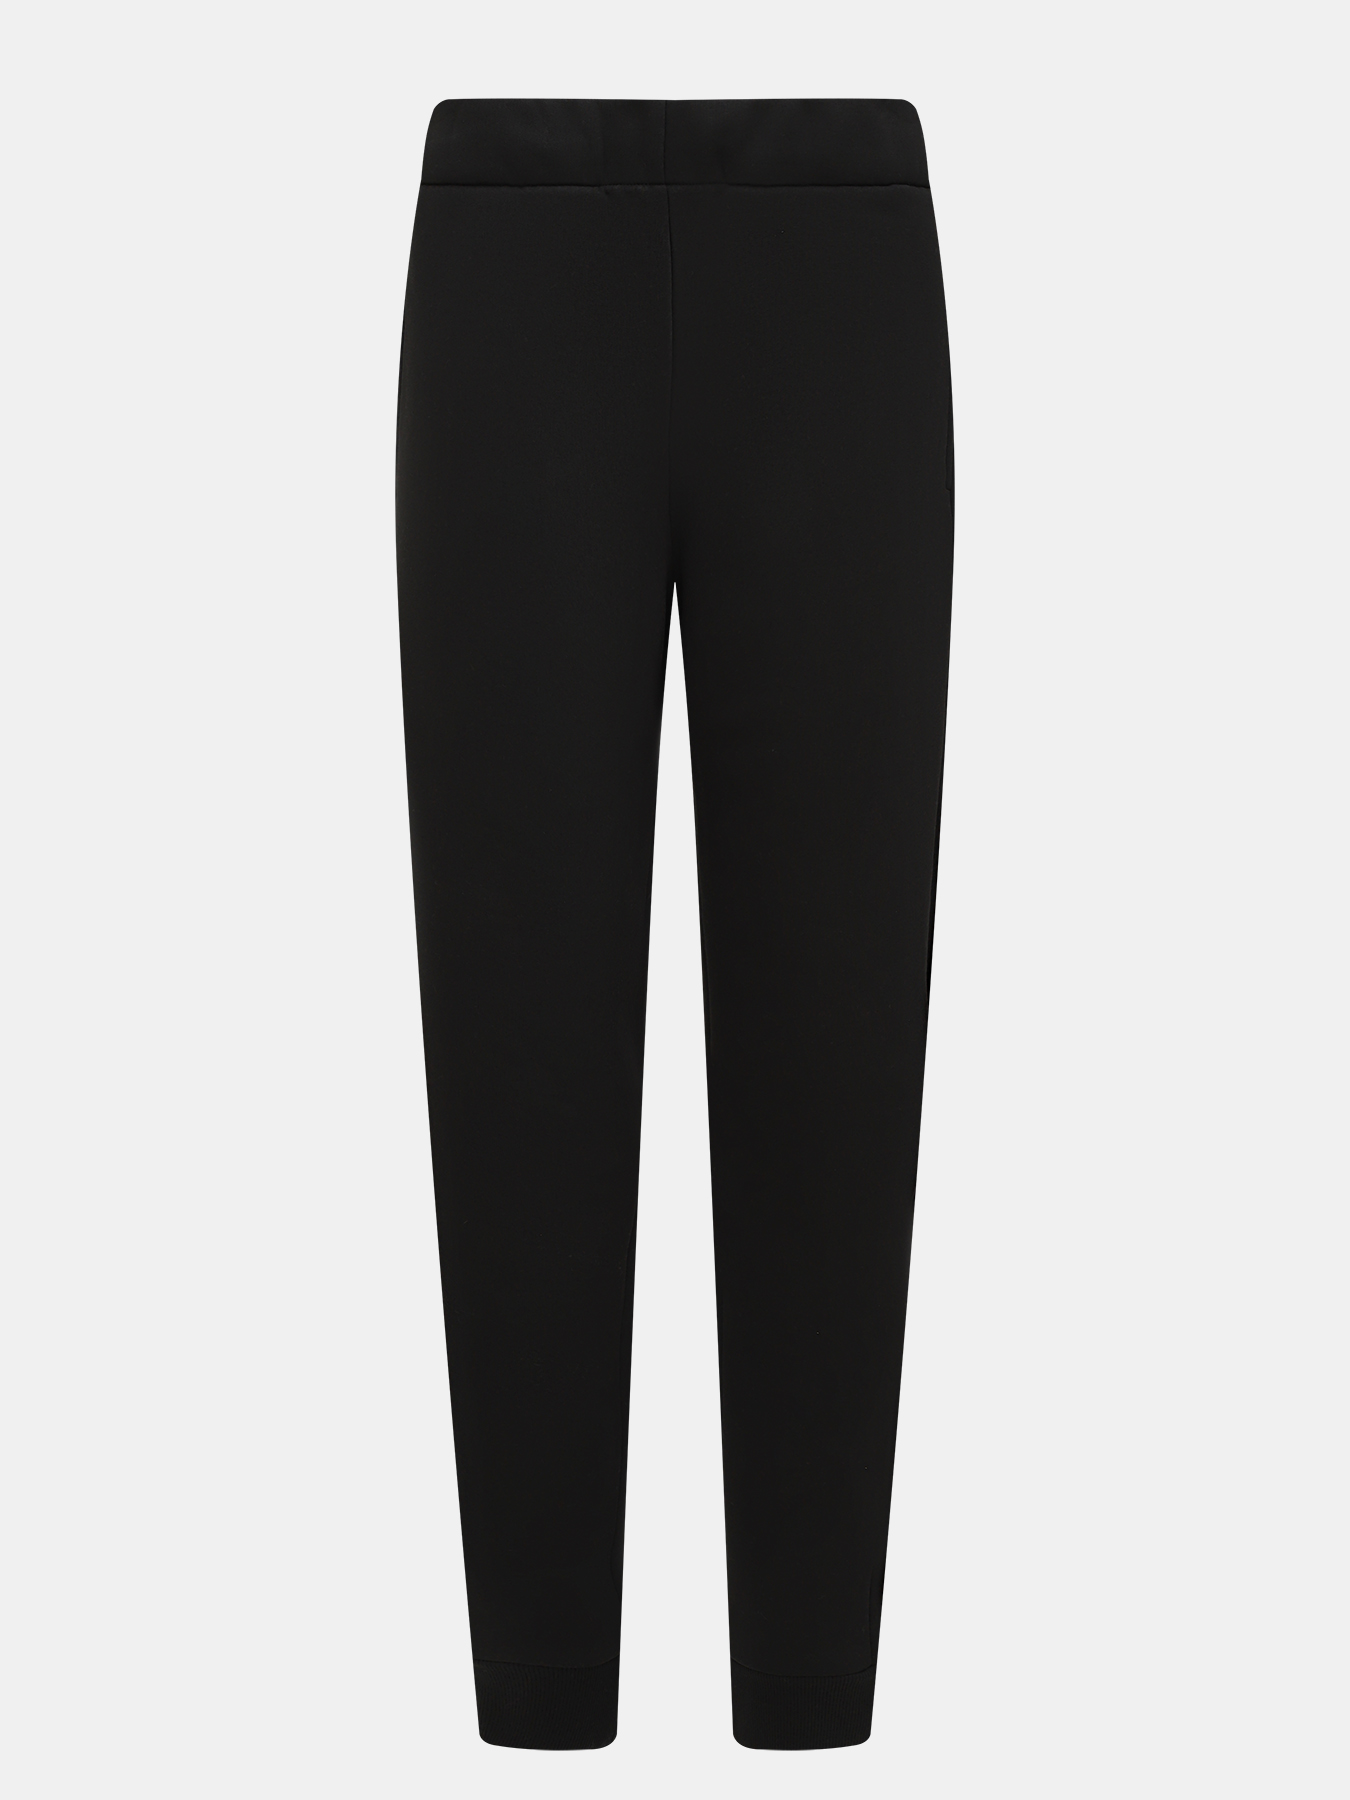 Спортивные брюки Finisterre. Цвет: черный